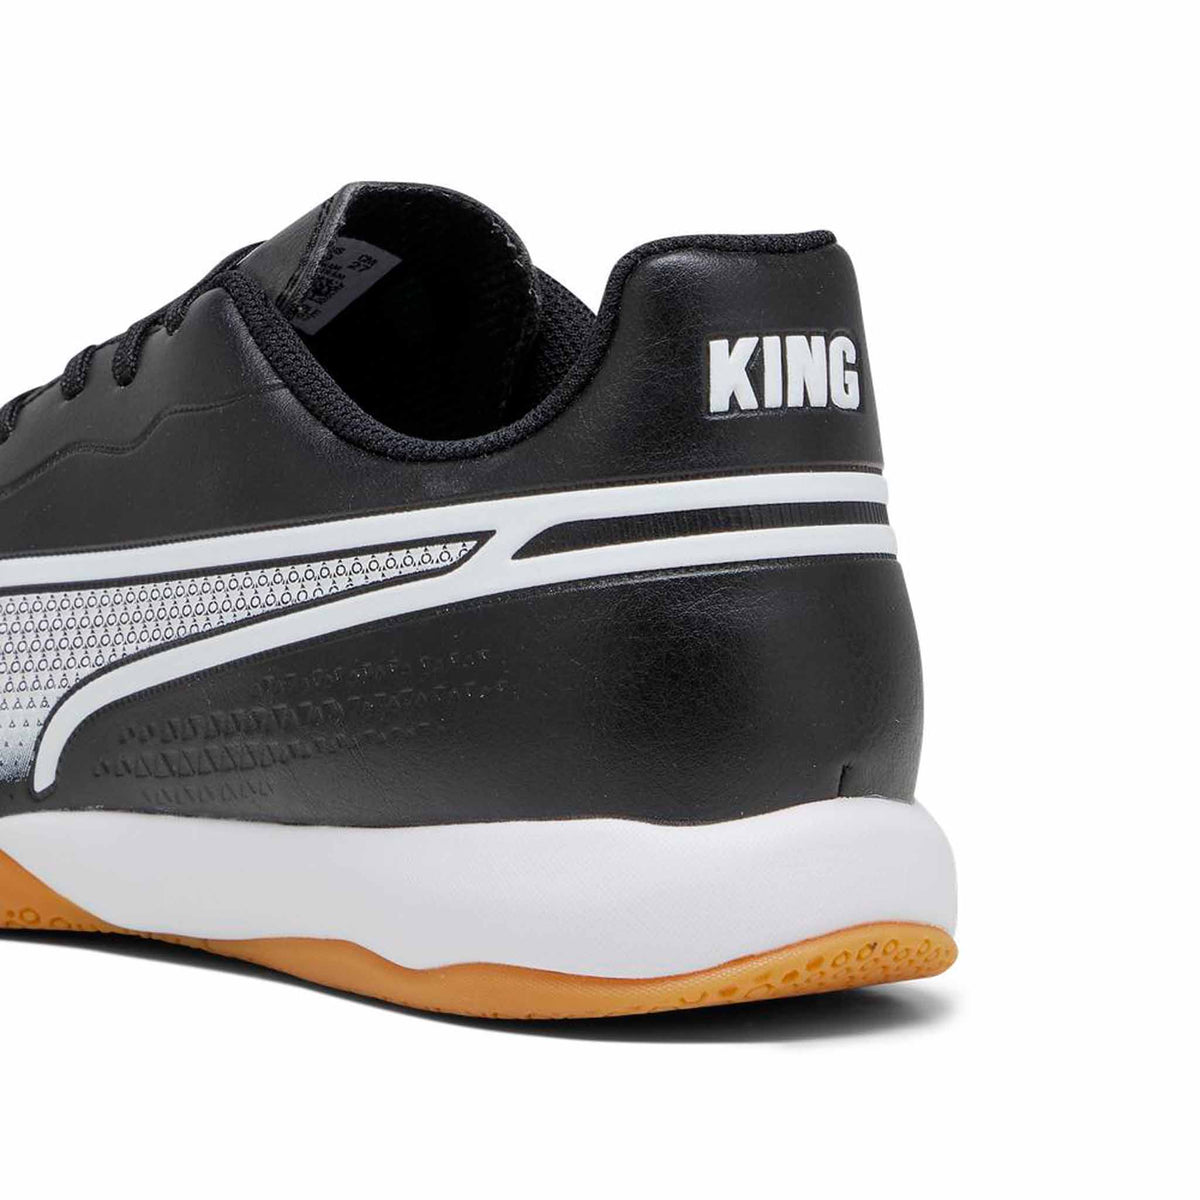 Puma King Match IT chaussures de soccer intérieur pour adulte - Puma Black / Puma White